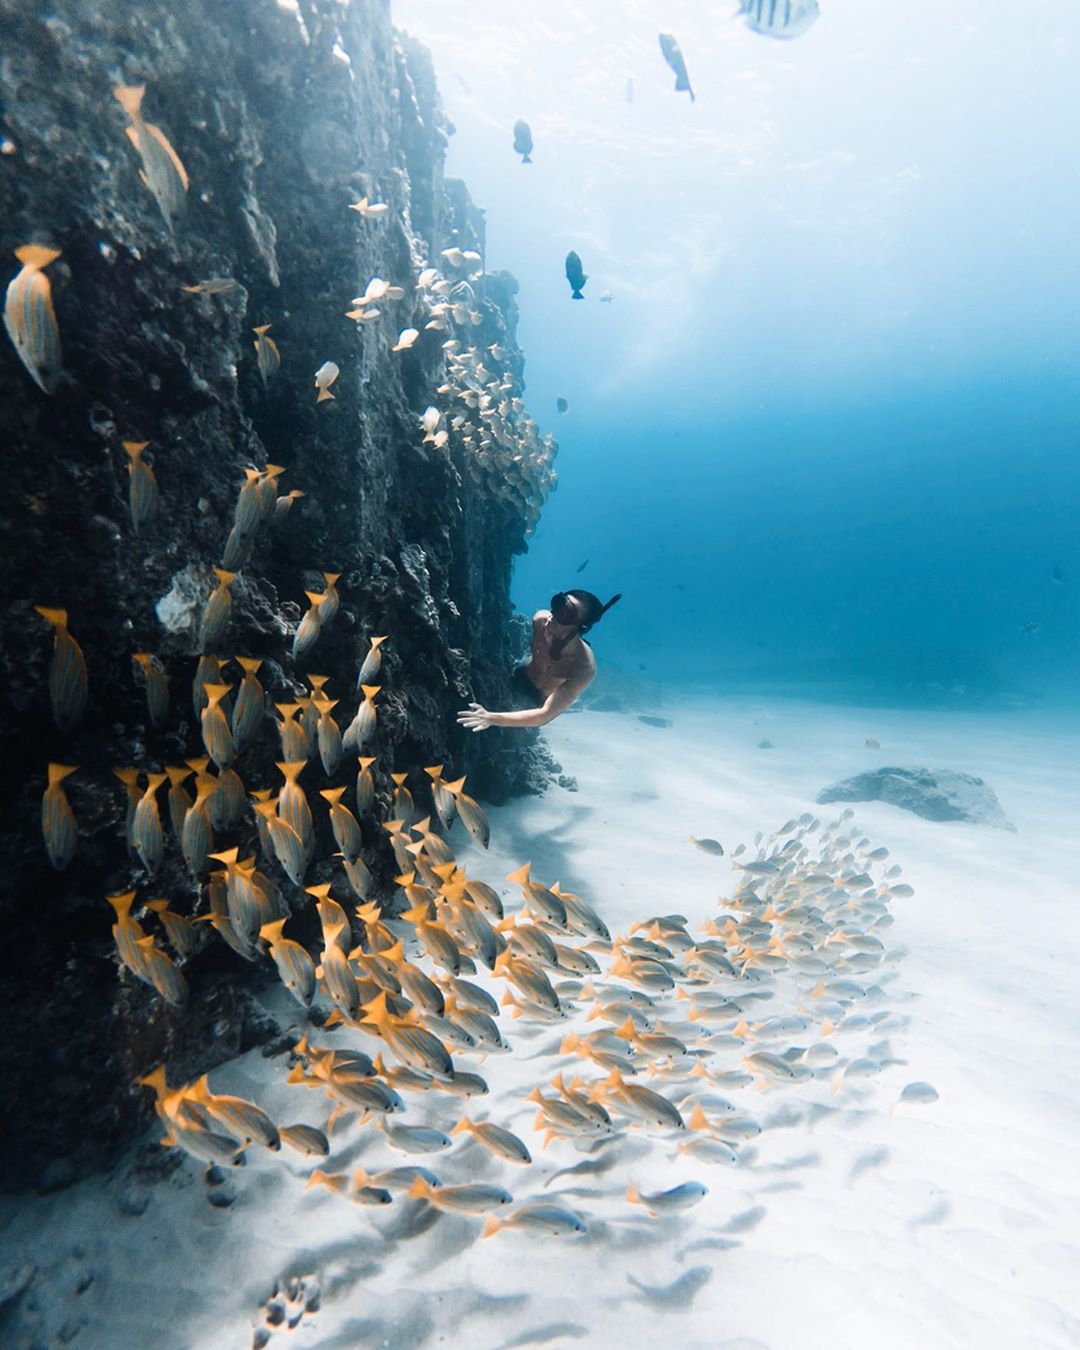 Захватывающие подводные снимки от Нолана Омура